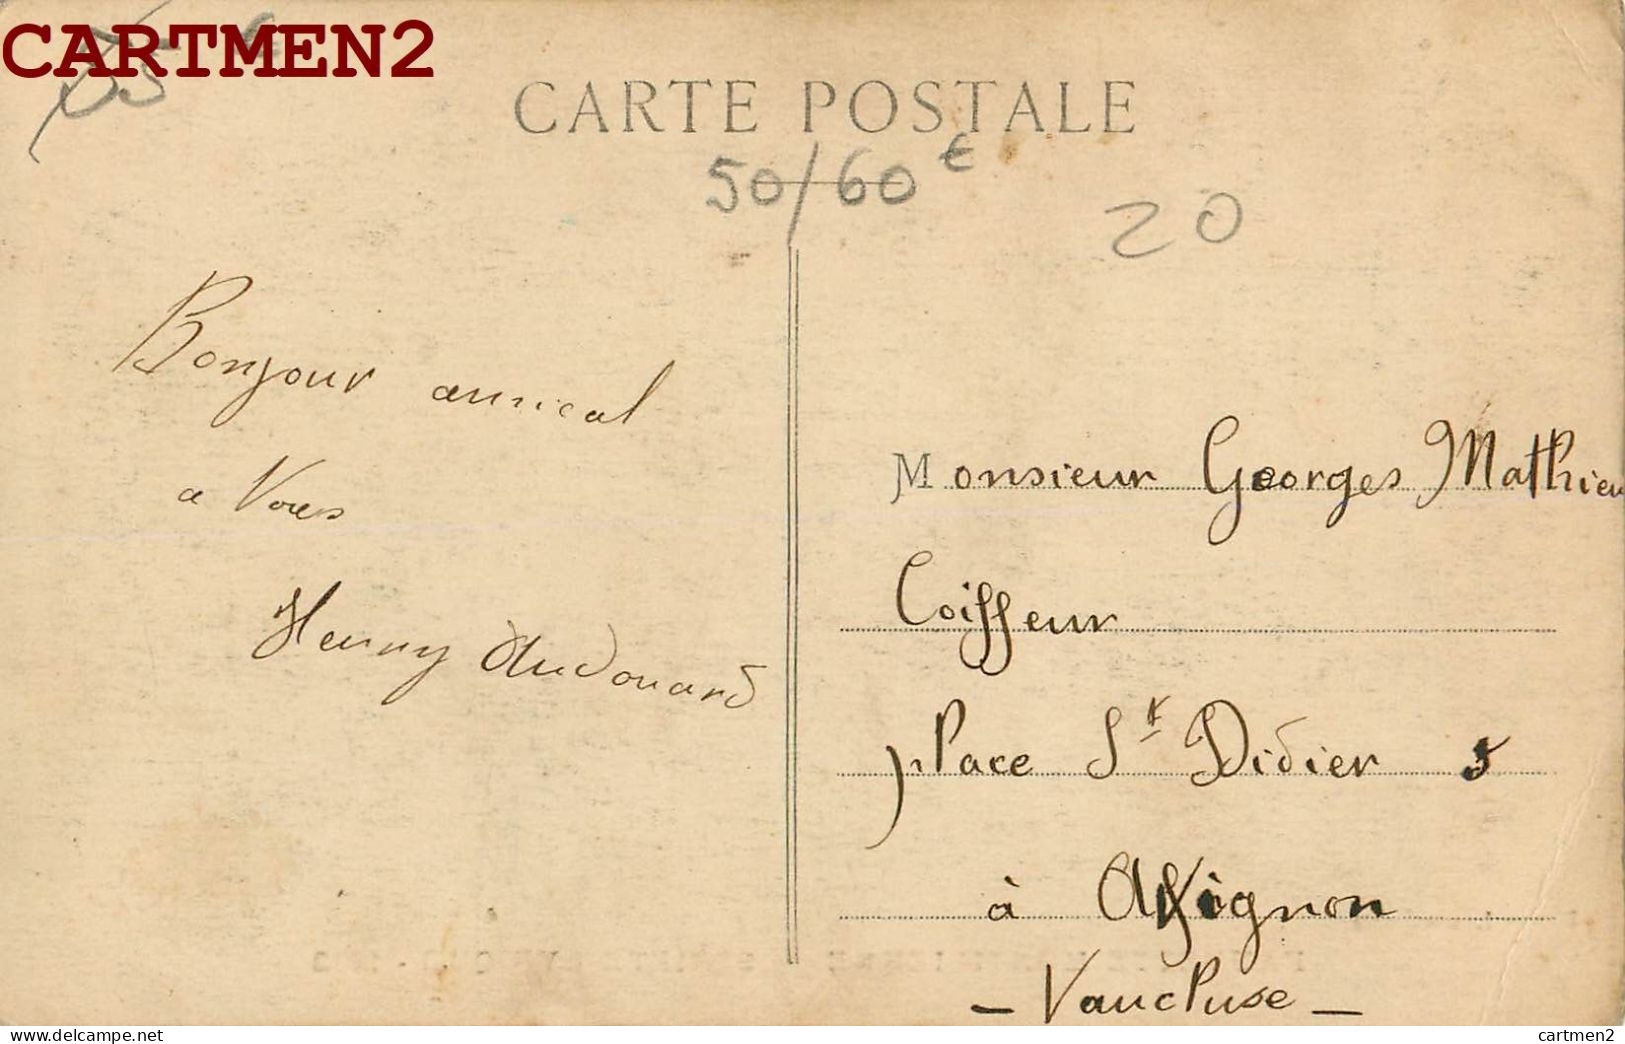 FAUVETTE MONTILIENNE SOCIETE LYRIQUE 1912 ORCHESTRE MUSIQUE 26 DROME - Other & Unclassified